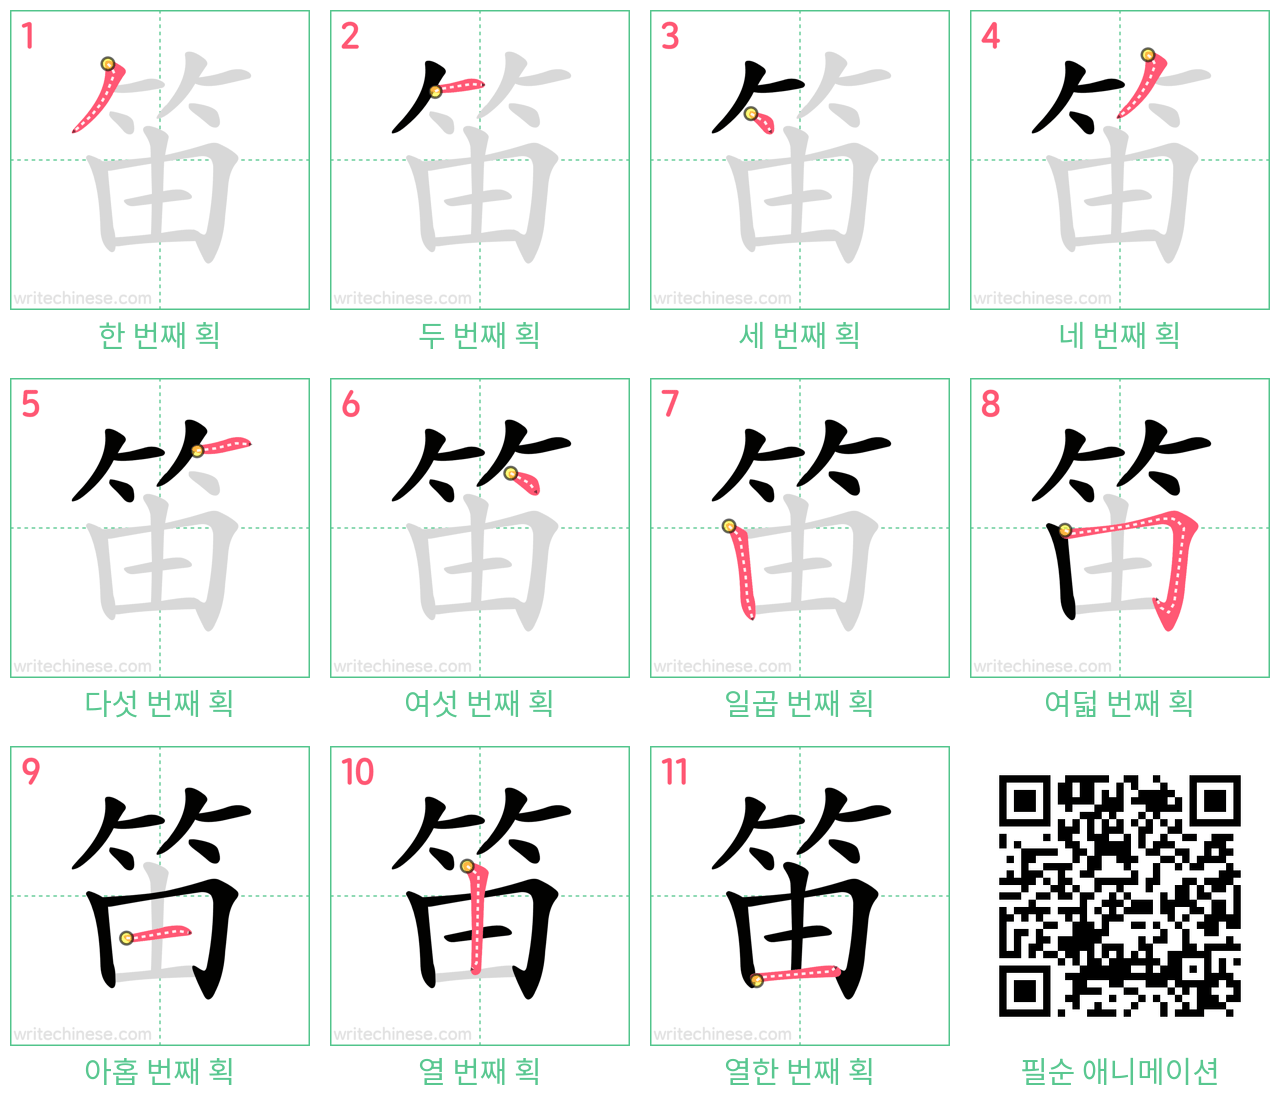 笛 step-by-step stroke order diagrams